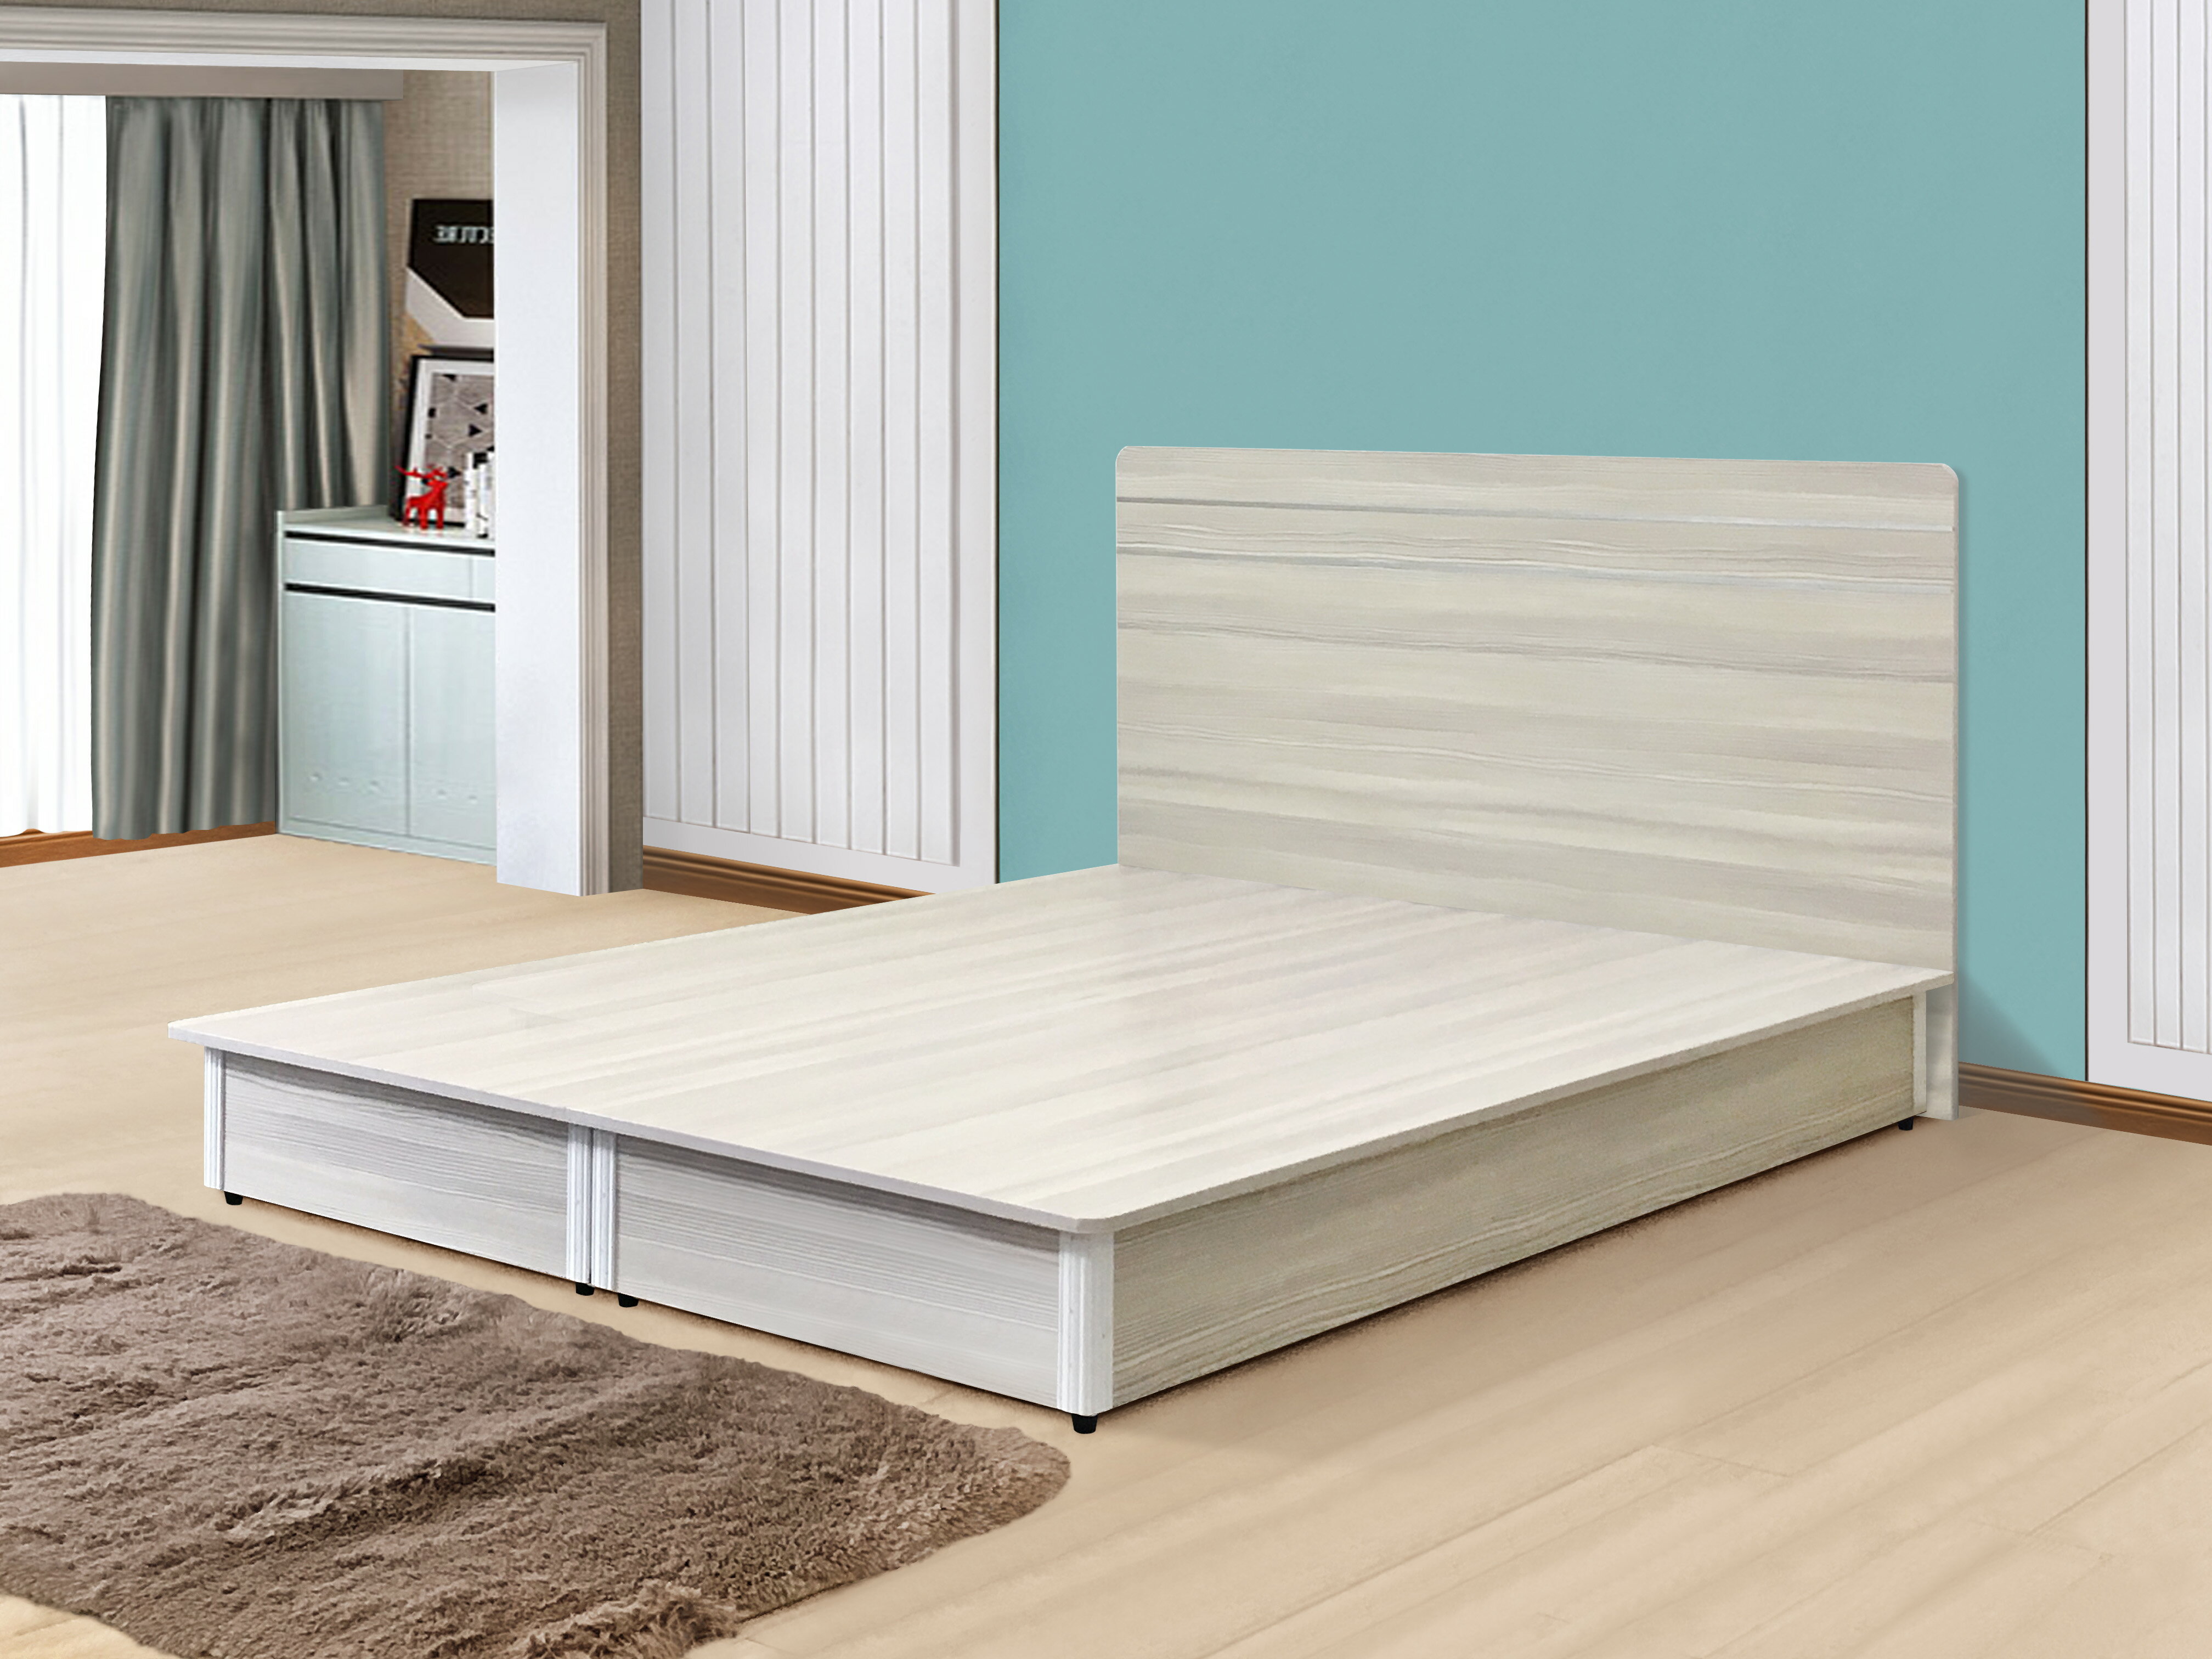 《莎爾》 新品 5尺床箱+床頭片 家具組 床架 床台 床頭板 水洗白 胡桃 簡約 時尚 【新生活家具】